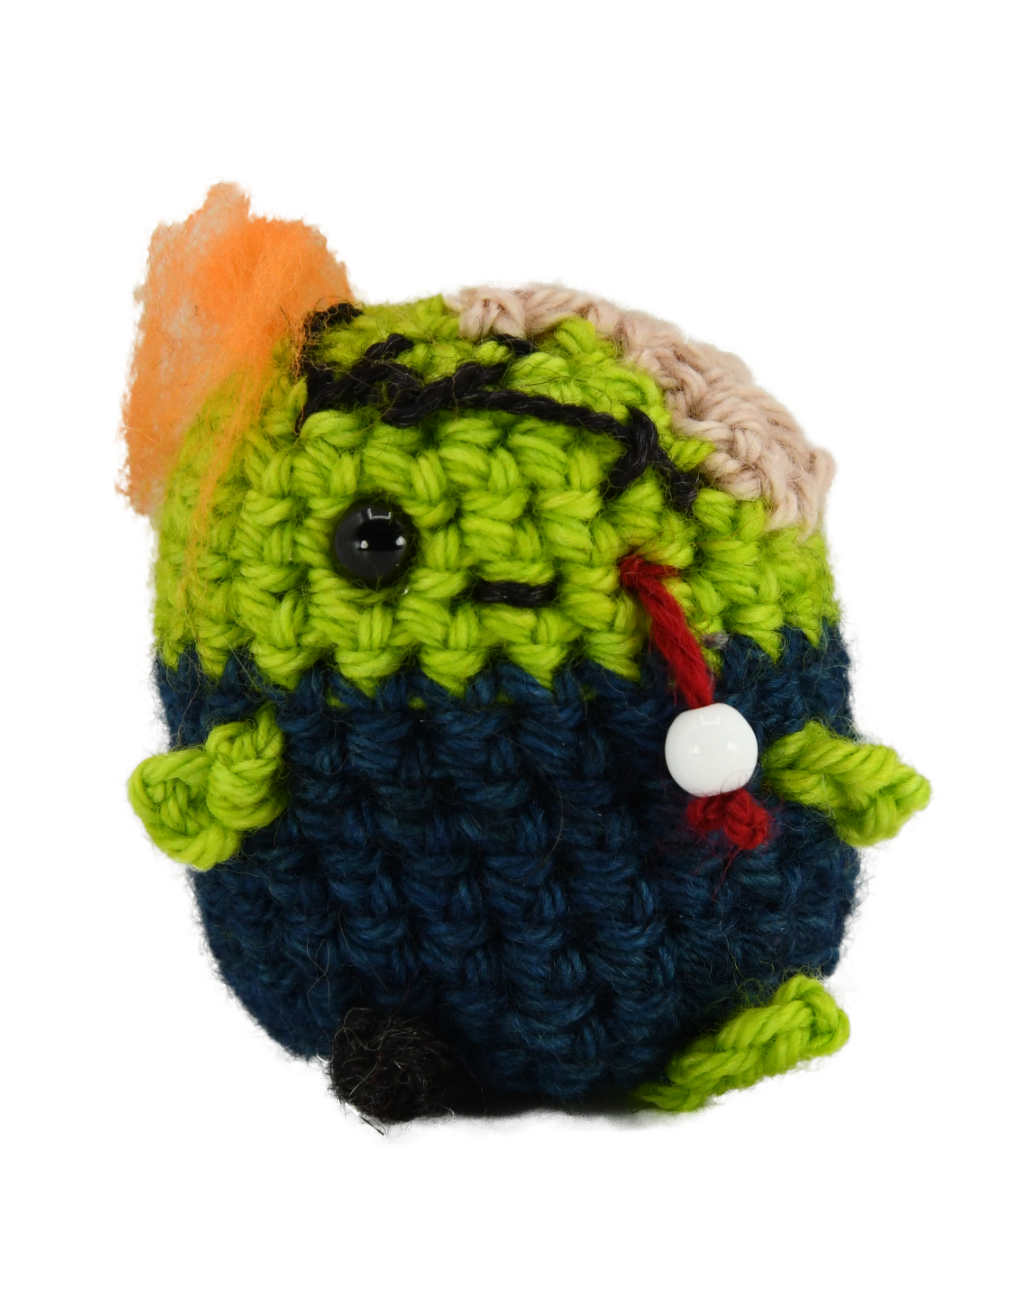 Barn Yarn Crochet Zombie